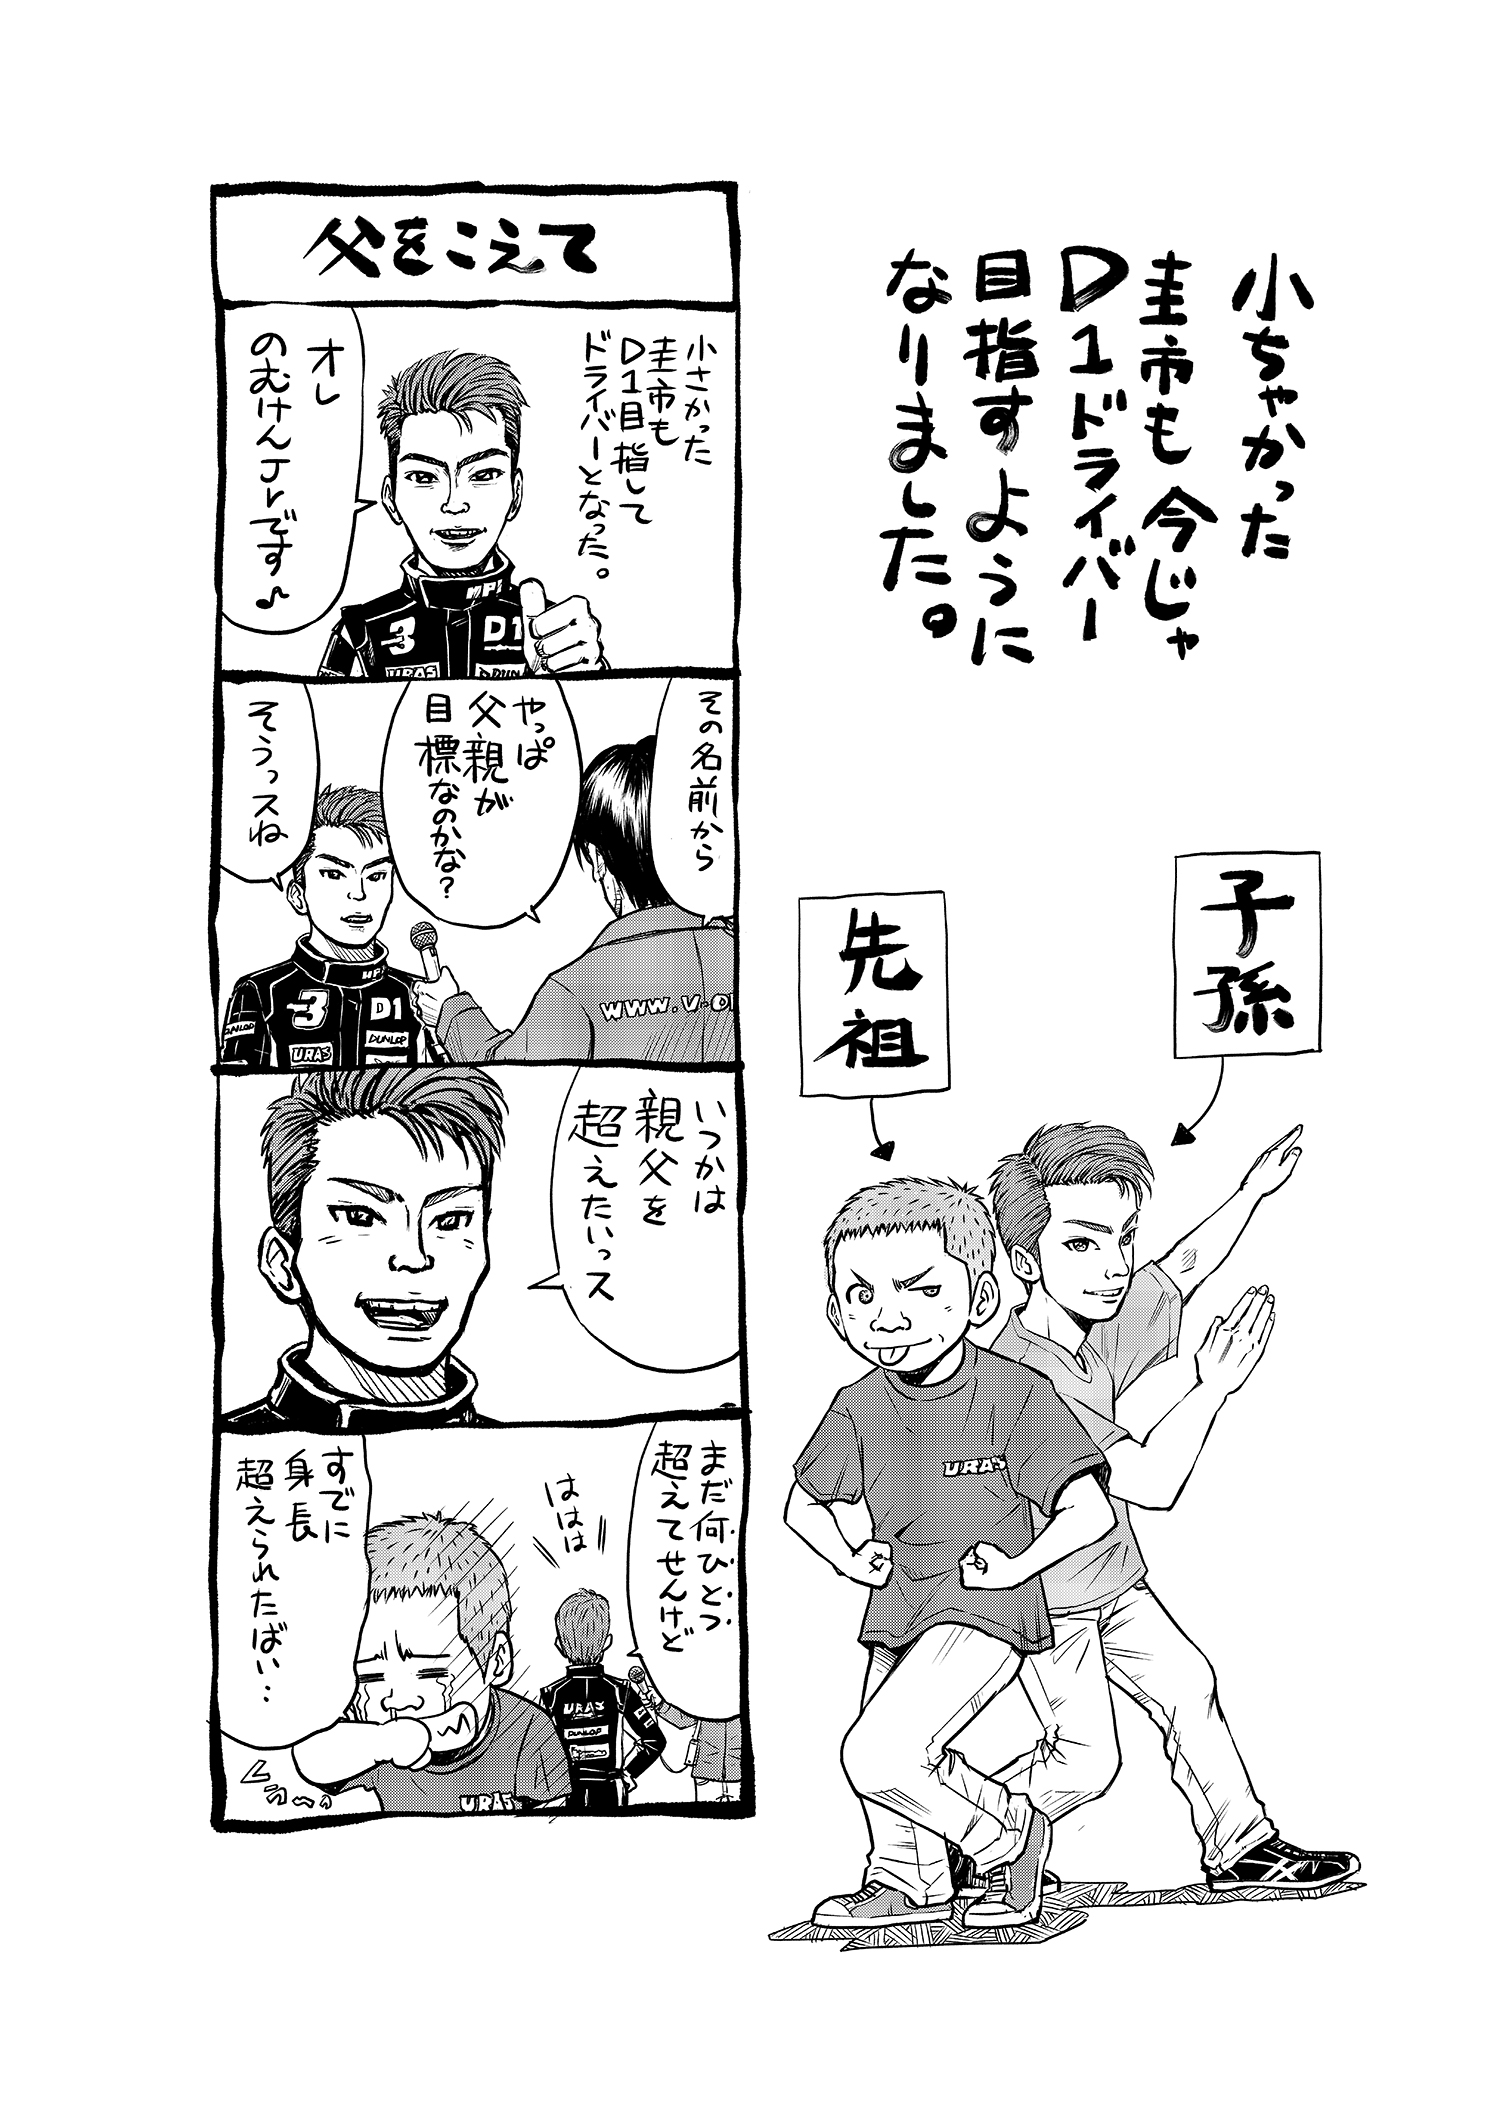 D1グランプリ界のスーパースター のむけん 野村謙 の自伝漫画プロジェクトがクラウドファンディングでスタート 三栄のプレスリリース